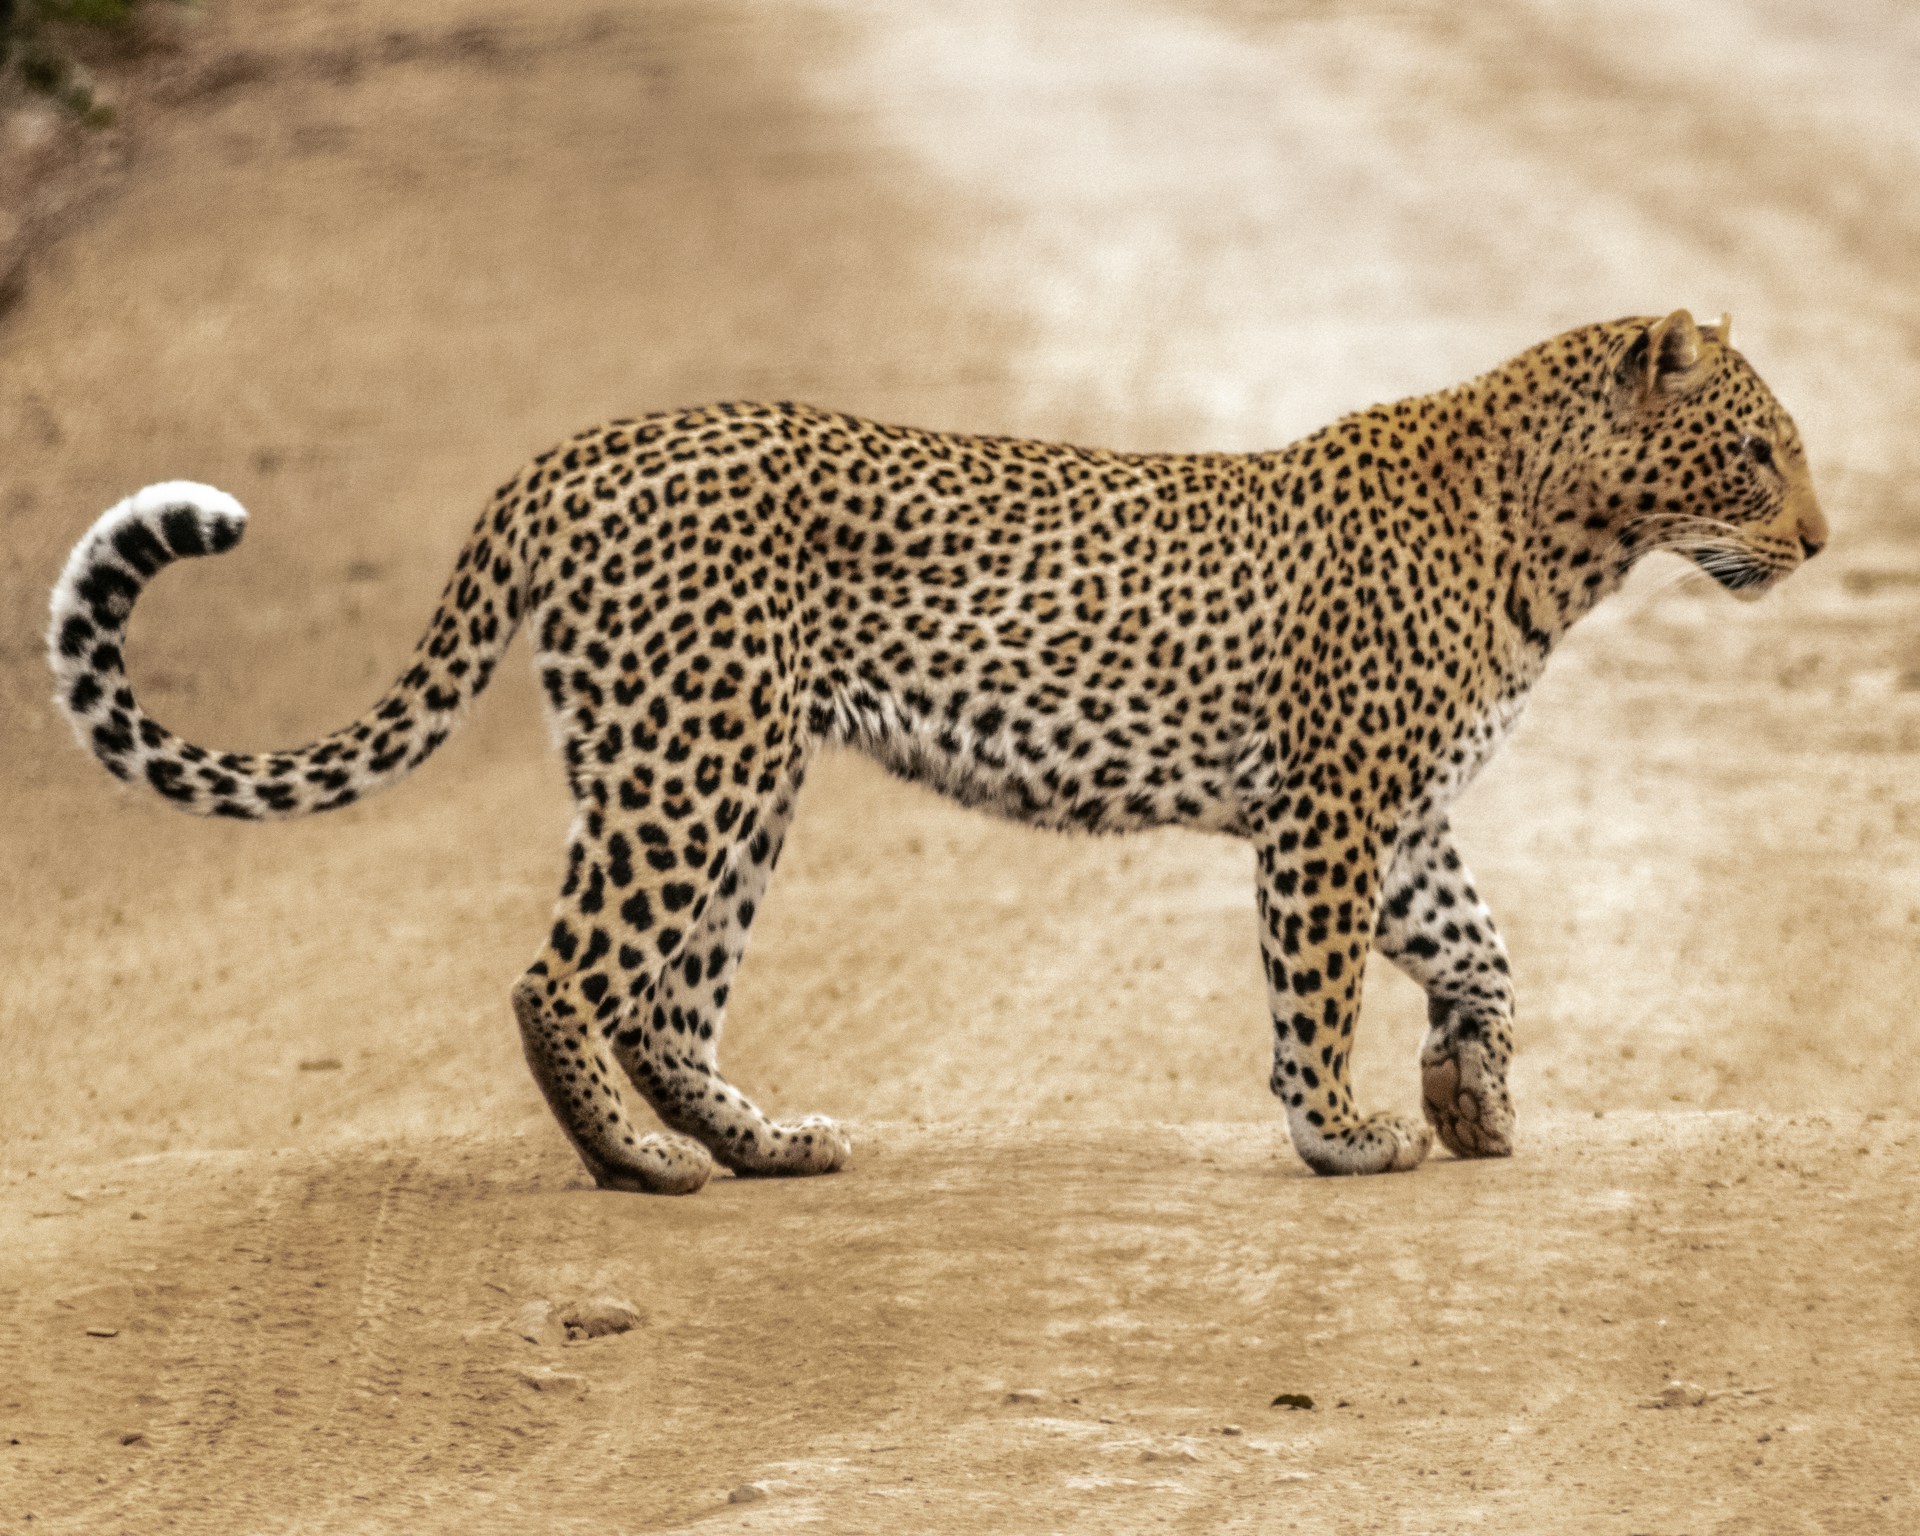 A female leopard